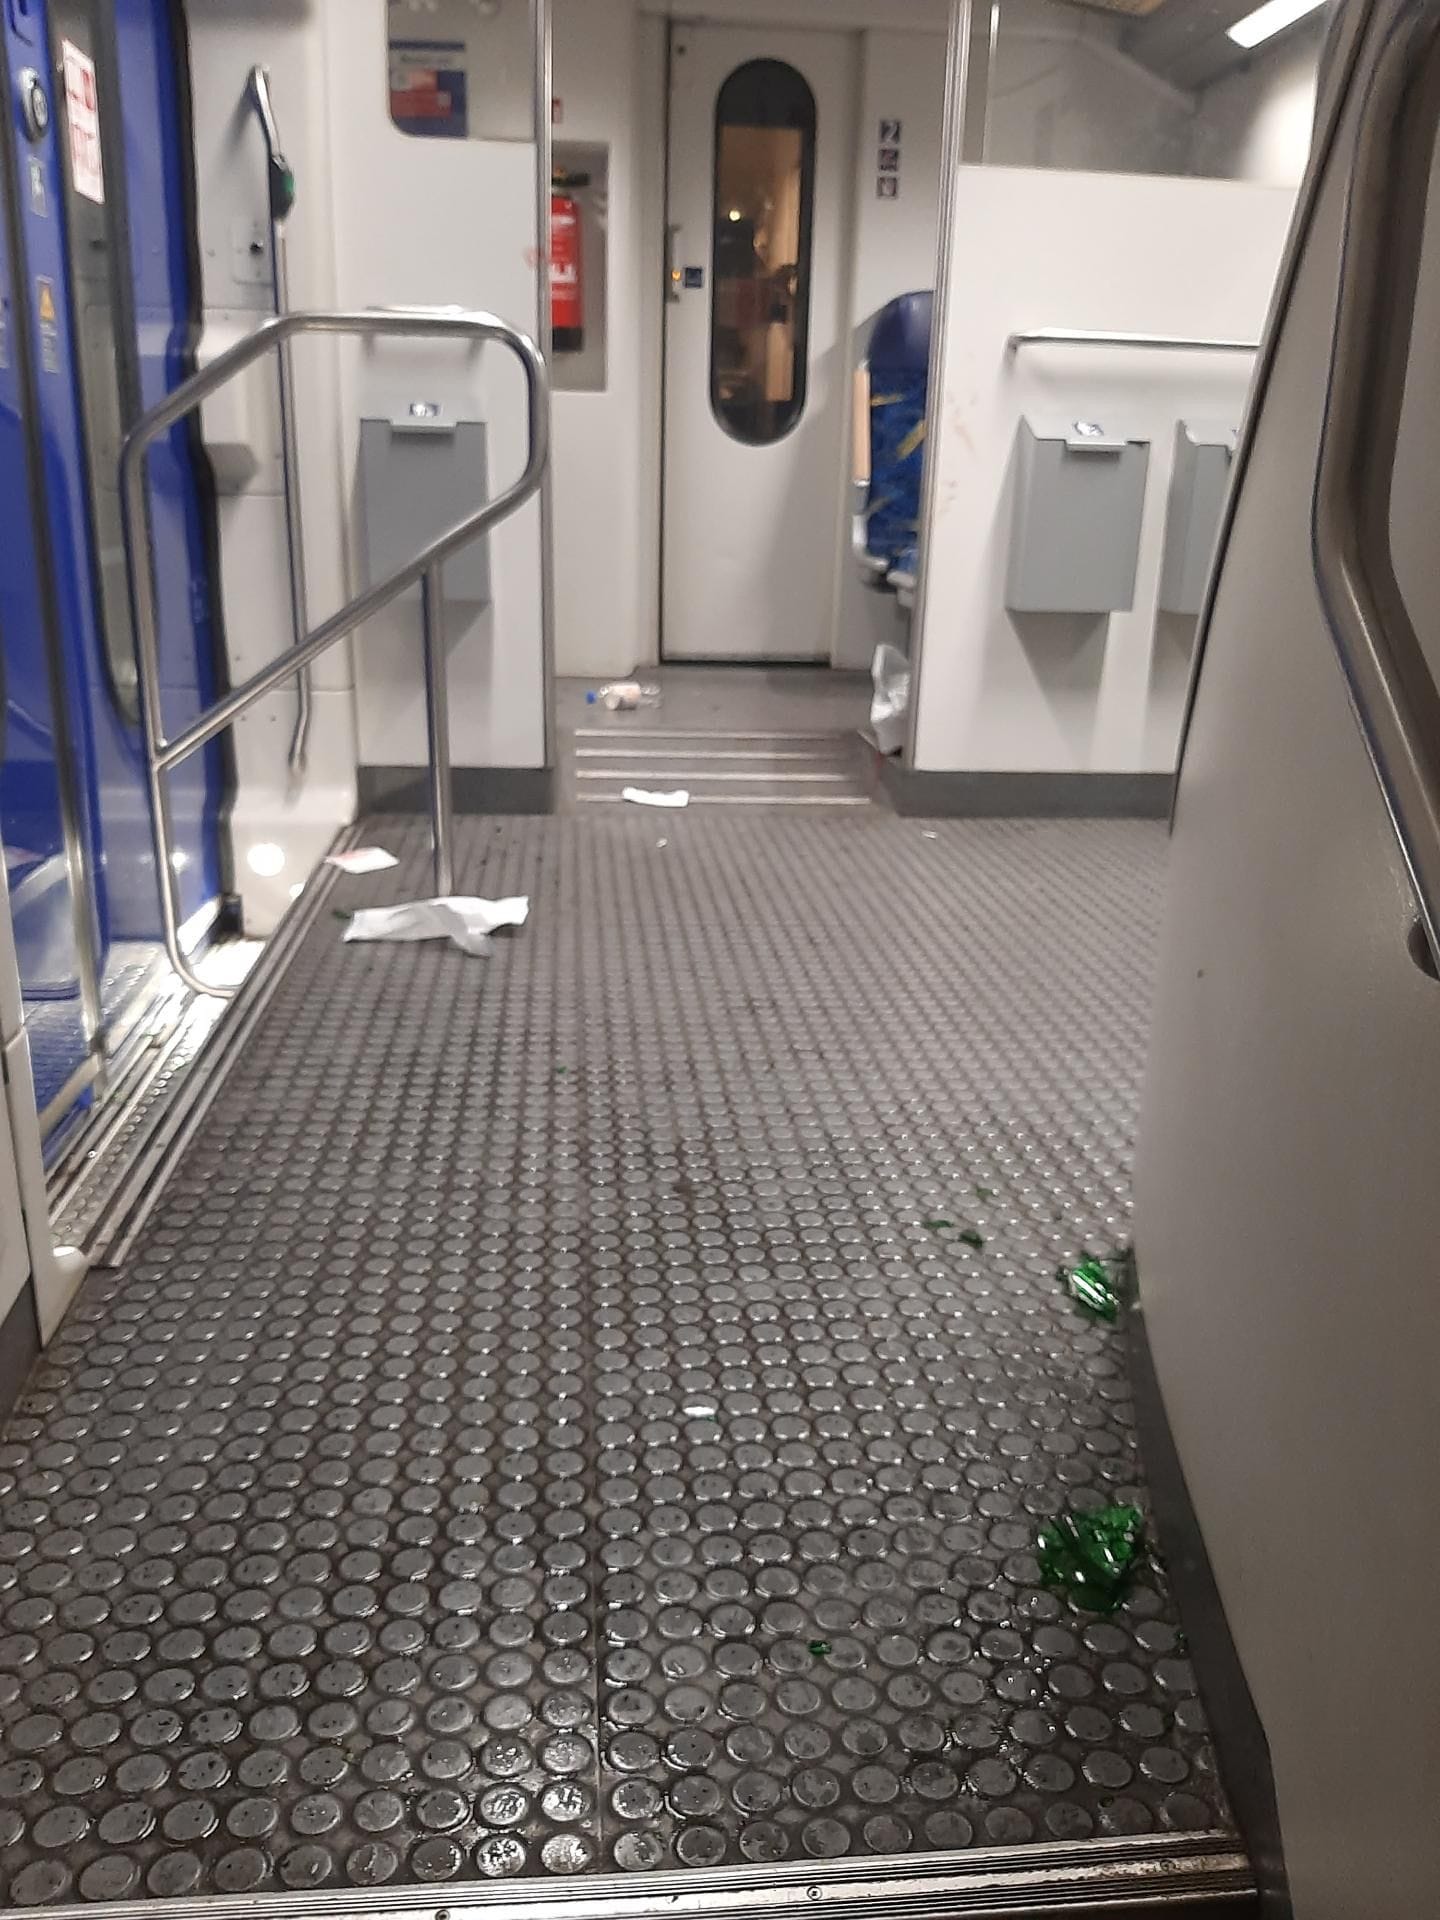 An dieser Stelle im Zug soll die Frau gesessen haben, als sie von der Flasche getroffen wurde.